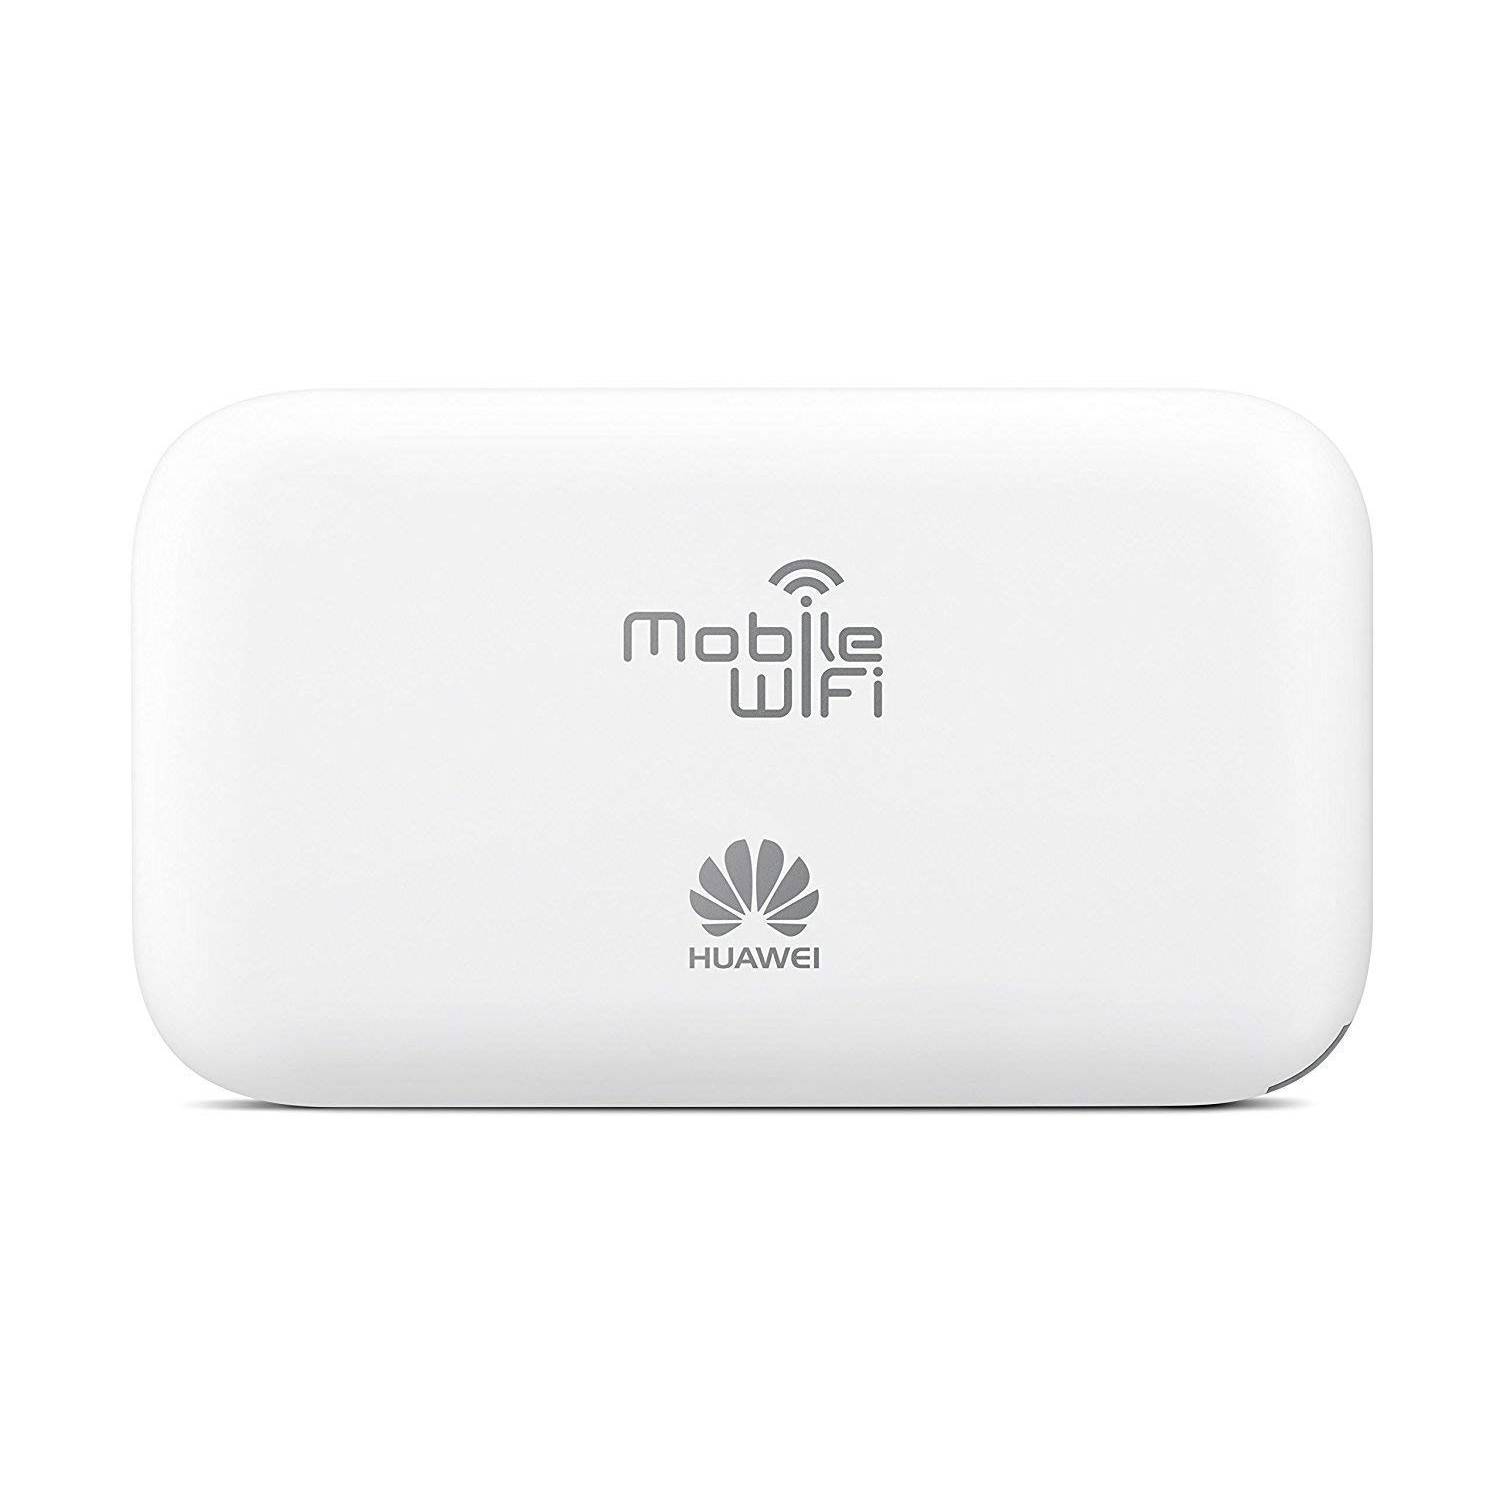 Señor no usado cascada Modem Router Huawei Mobile Wifi 4G LTE portátil 150mbps blanco HUAWEI |  falabella.com